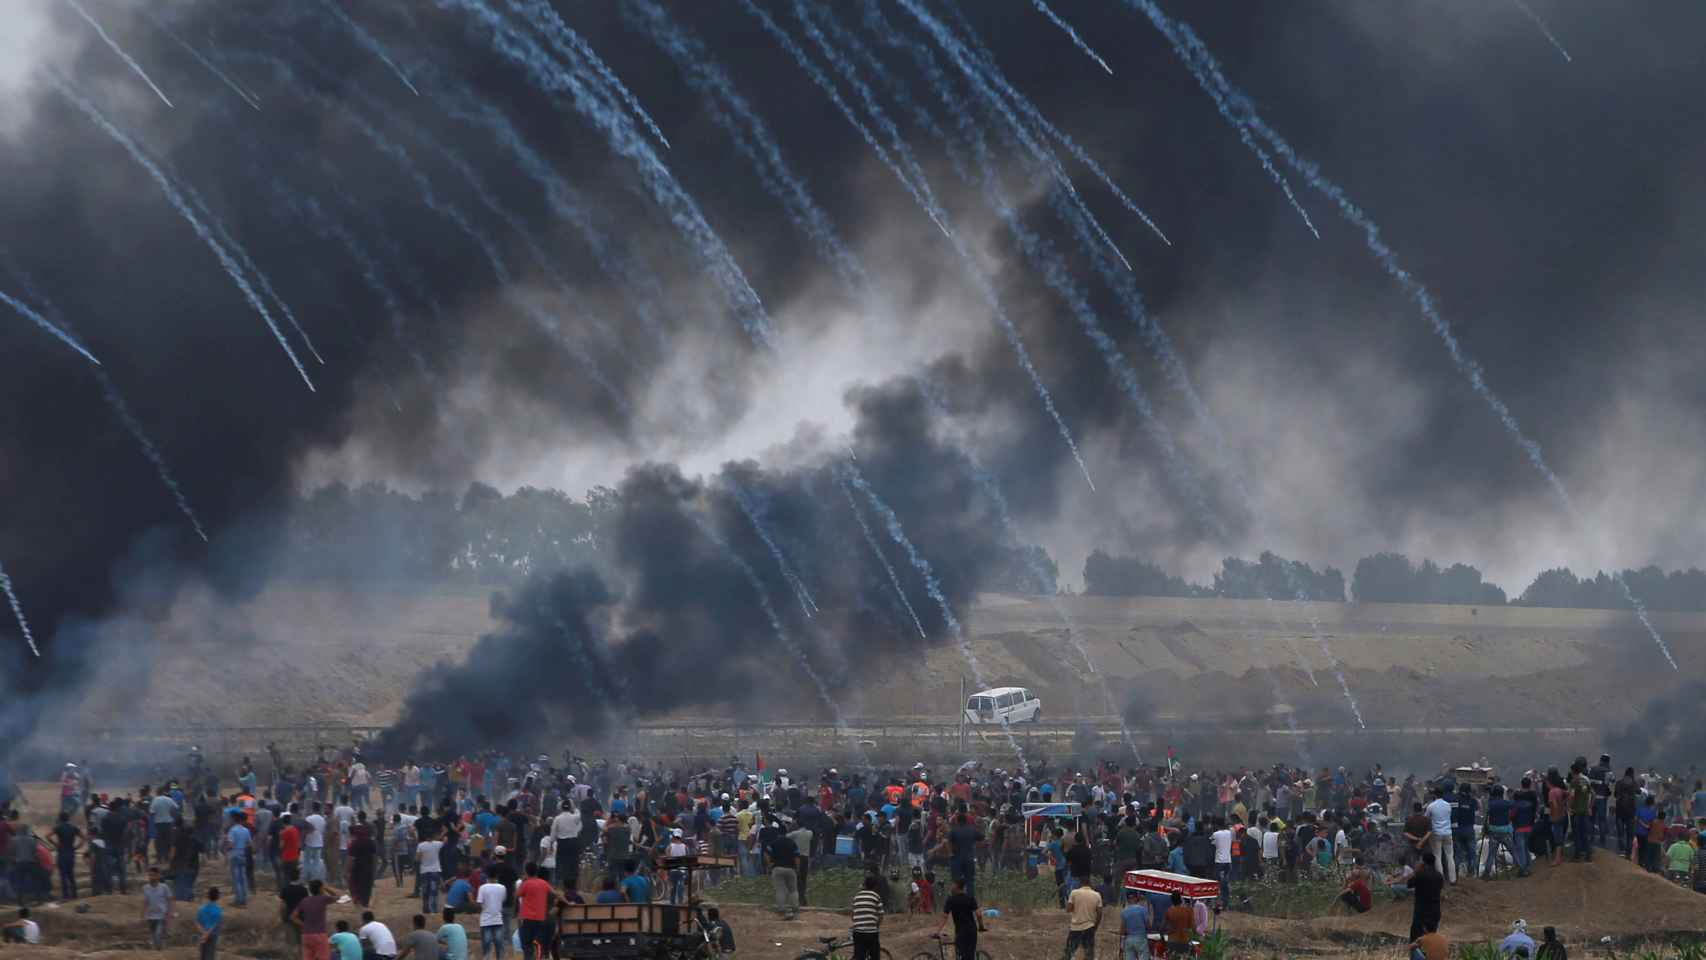 Botes de gas lacrimógeno lanzados por Israel caen sobre manifestantes palestinos